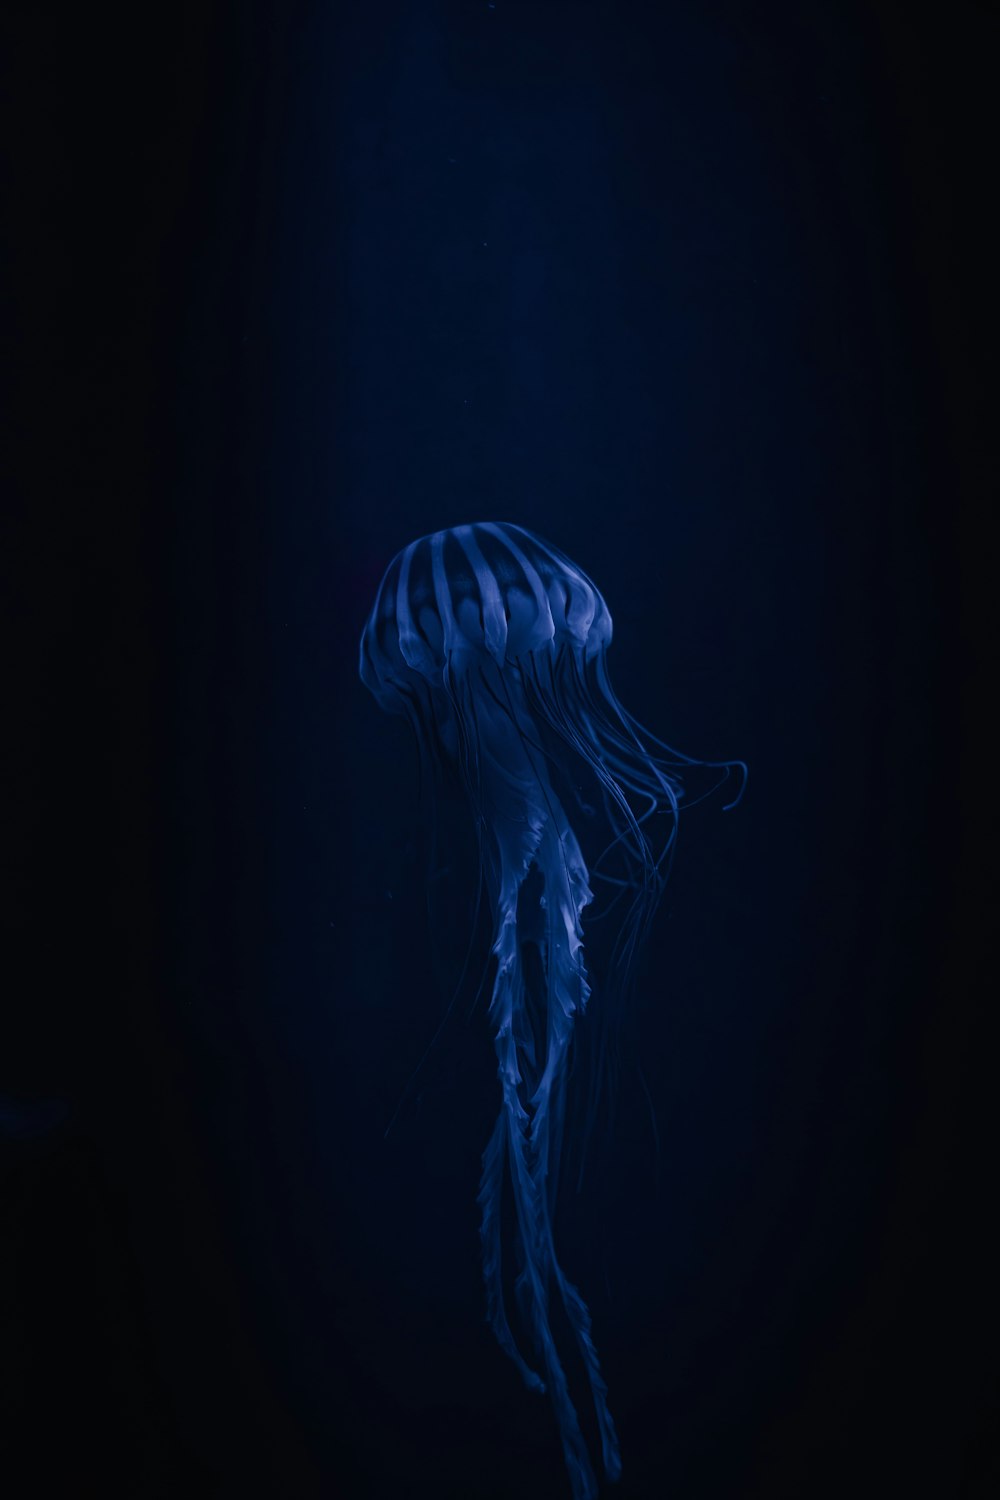 una medusa blu che galleggia nell'acqua scura